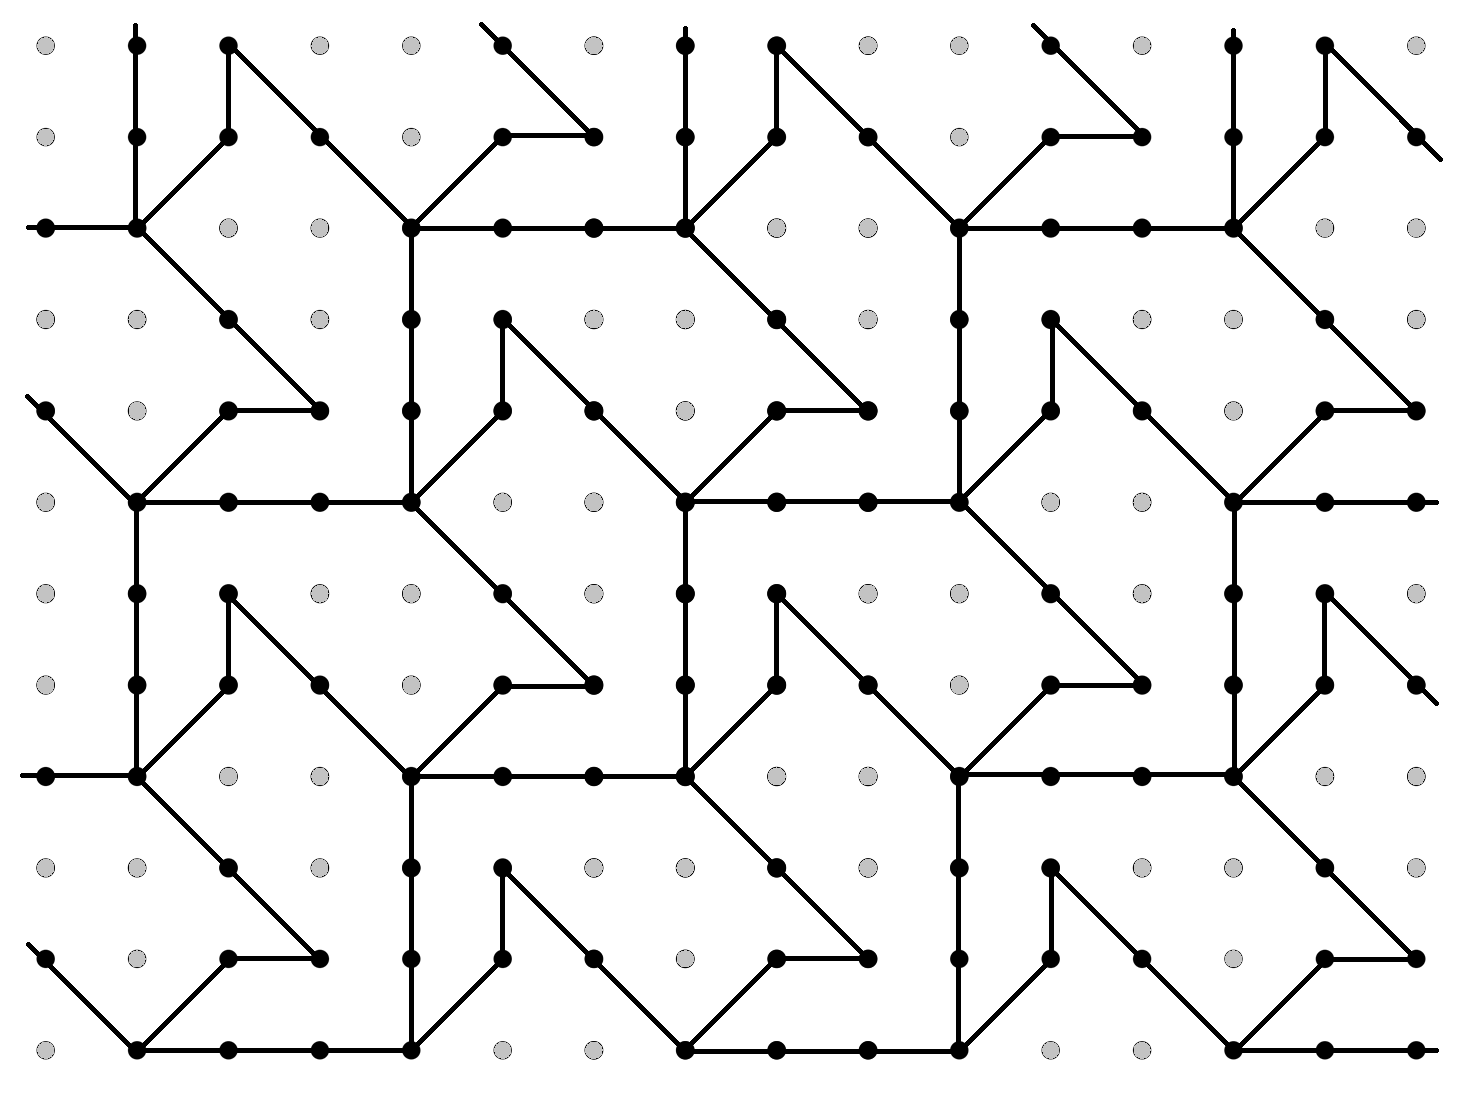 MEDIAN Don Steward mathematics teaching: designing tessellations